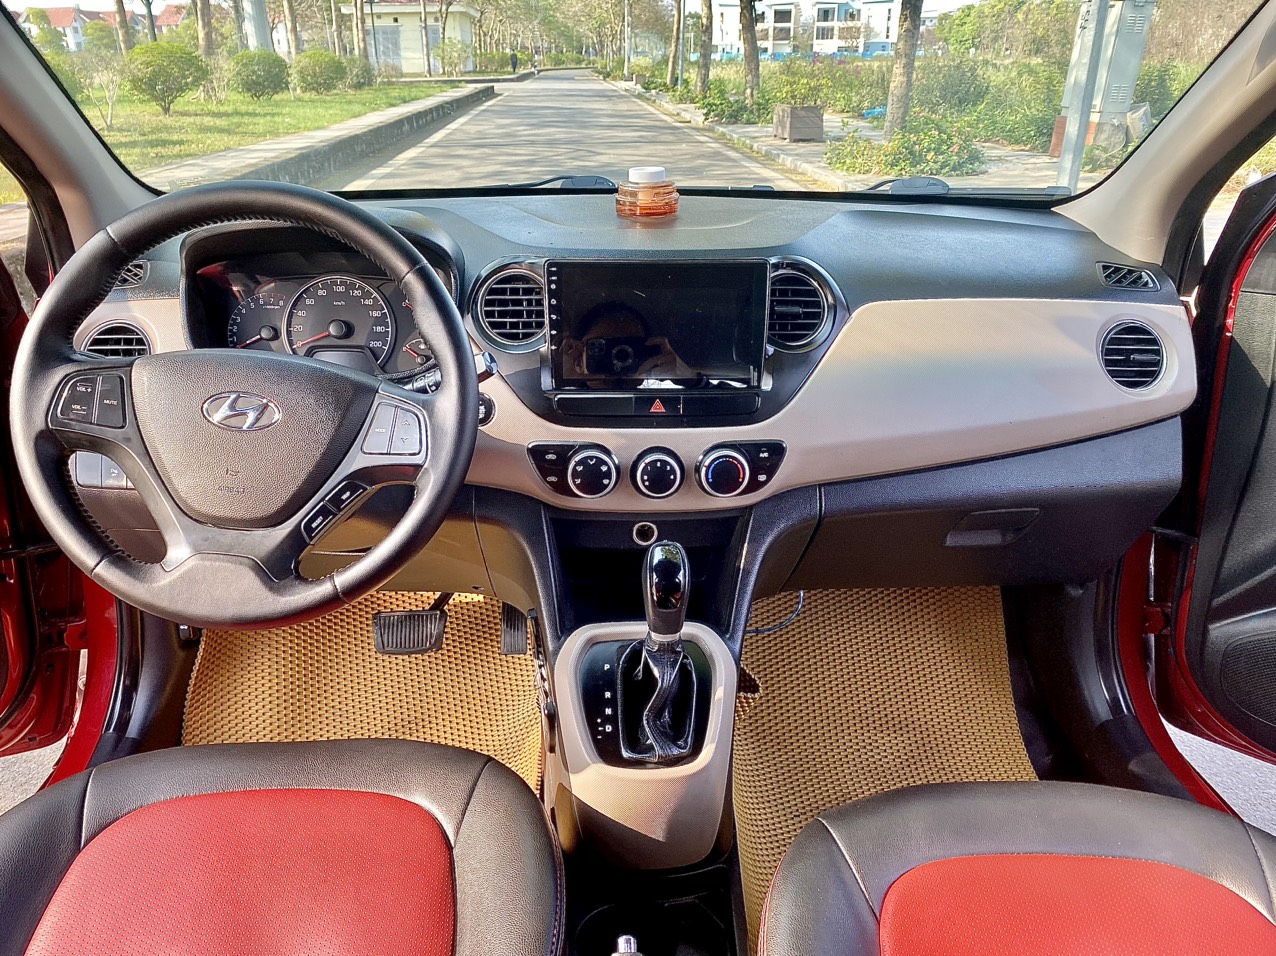 Cần bán Hyundai i10 10l năm 2015 màu đỏ xe nhập số tự động   Bantotcomvn